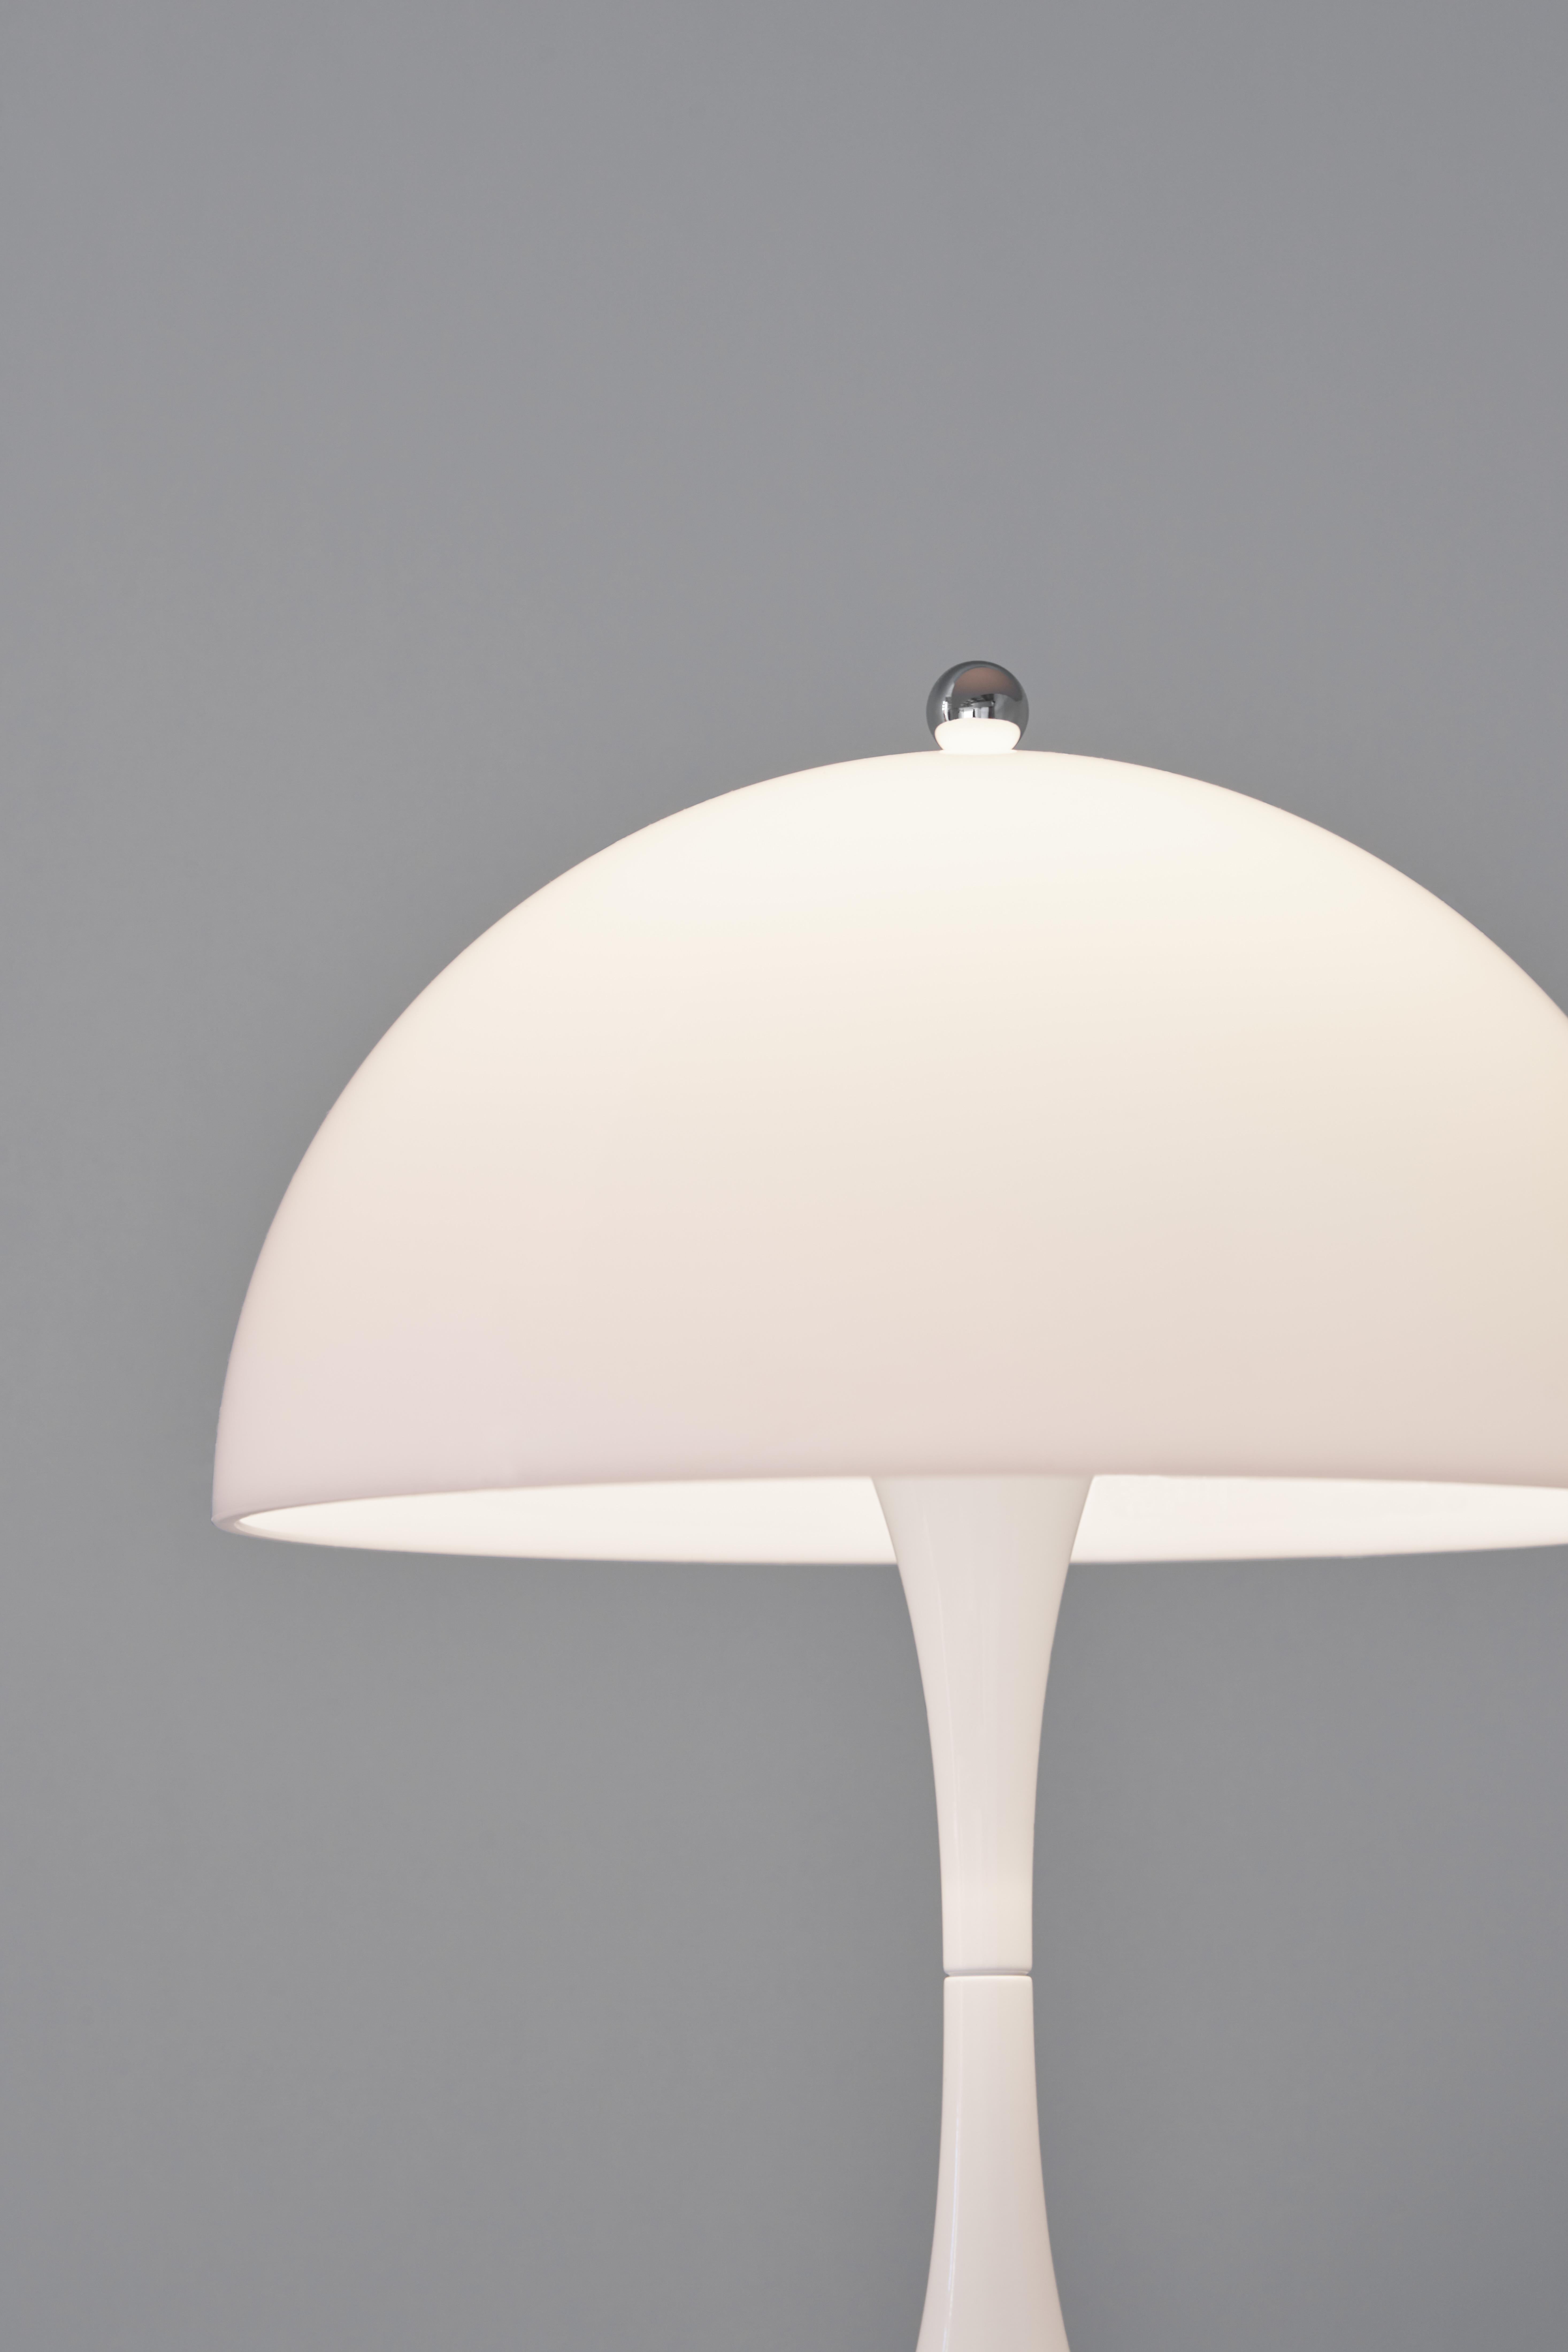 Der 1971 entworfene Panthella gilt inzwischen als einer der bedeutendsten Entwürfe von Verner Panton. Die wiedererkennbare, weiche, organische Form der Tischleuchte ist nicht nur schön, sondern auch funktional, mit einem halbkugelförmigen Schirm,